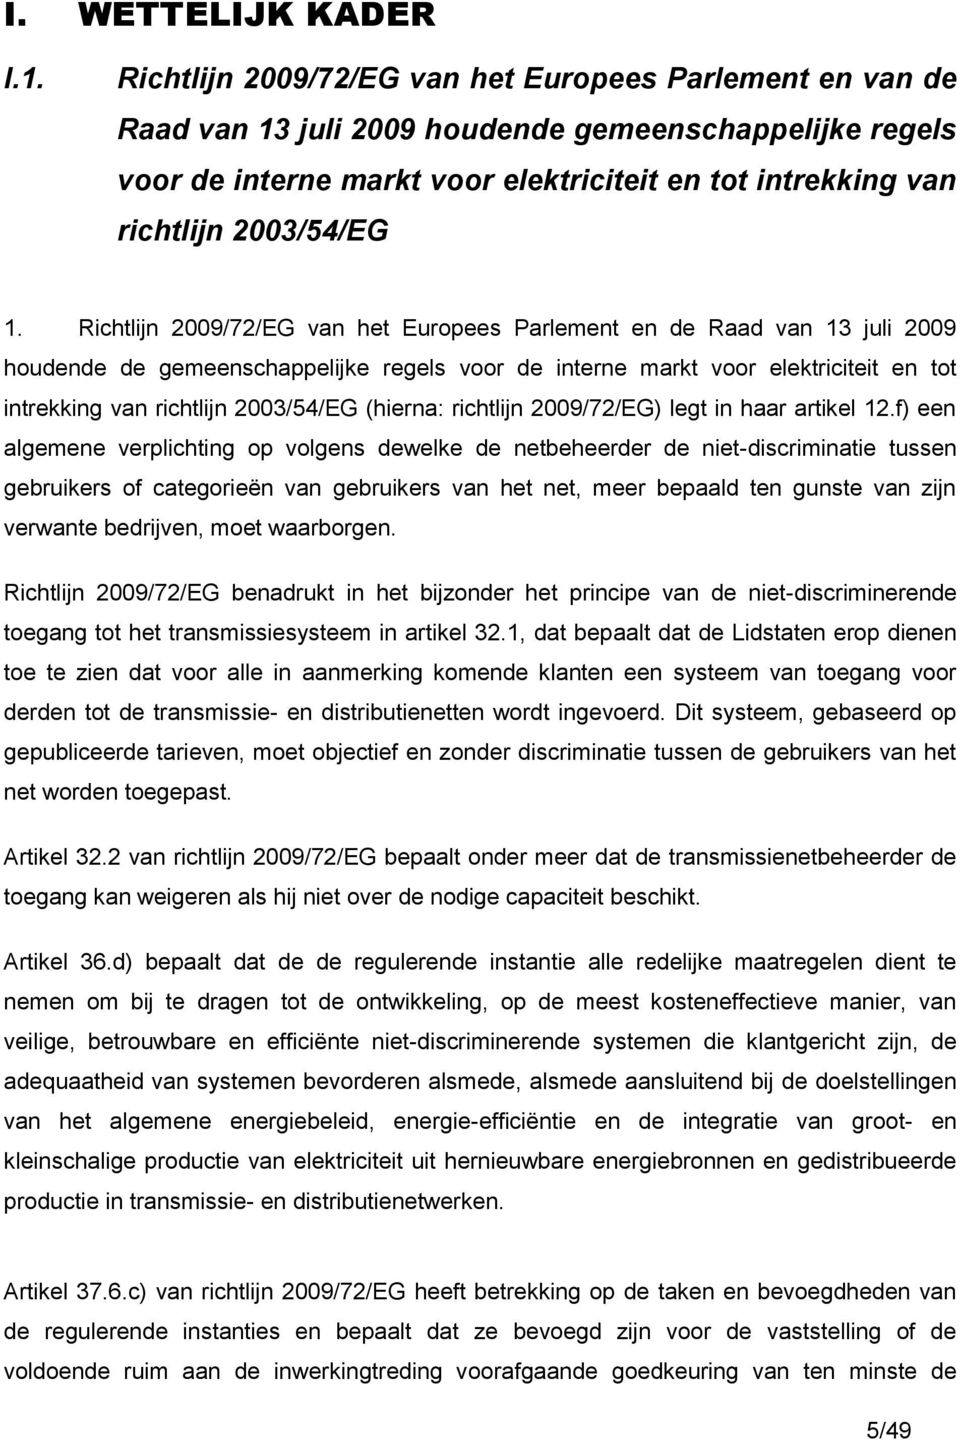 1. Richtlijn 2009/72/EG van het Europees Parlement en de Raad van 13 juli 2009 houdende de gemeenschappelijke regels voor de interne markt voor elektriciteit en tot intrekking van richtlijn